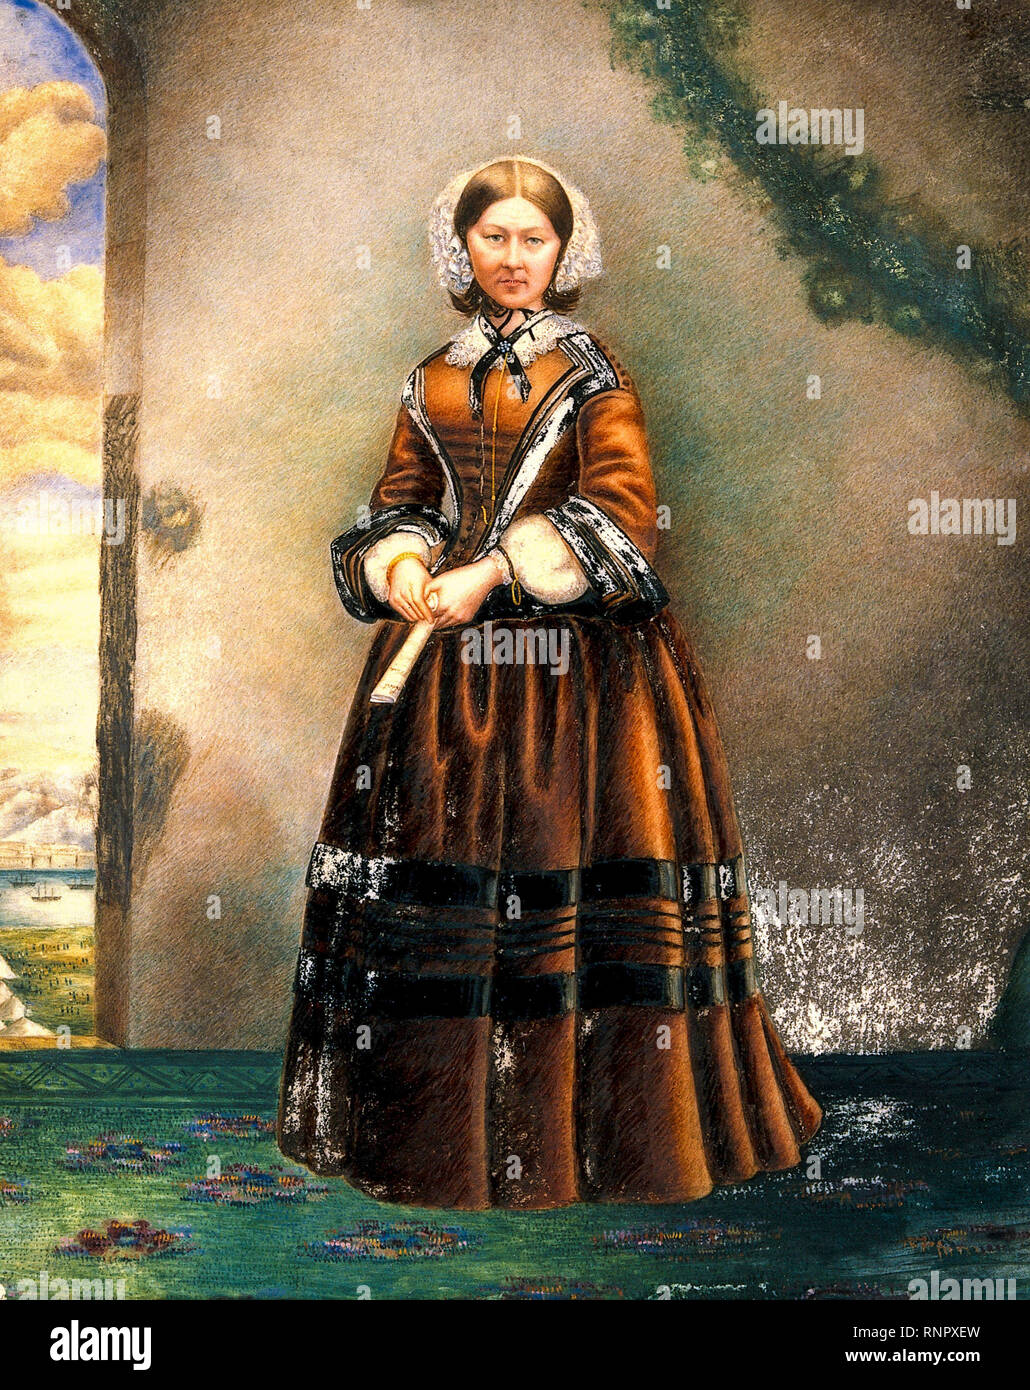 Florence Nightingale (1820-1910), riformatore sociale inglese, statistico e fondatore della moderna professione infermieristica, pittura ritratto, 19th secolo Foto Stock